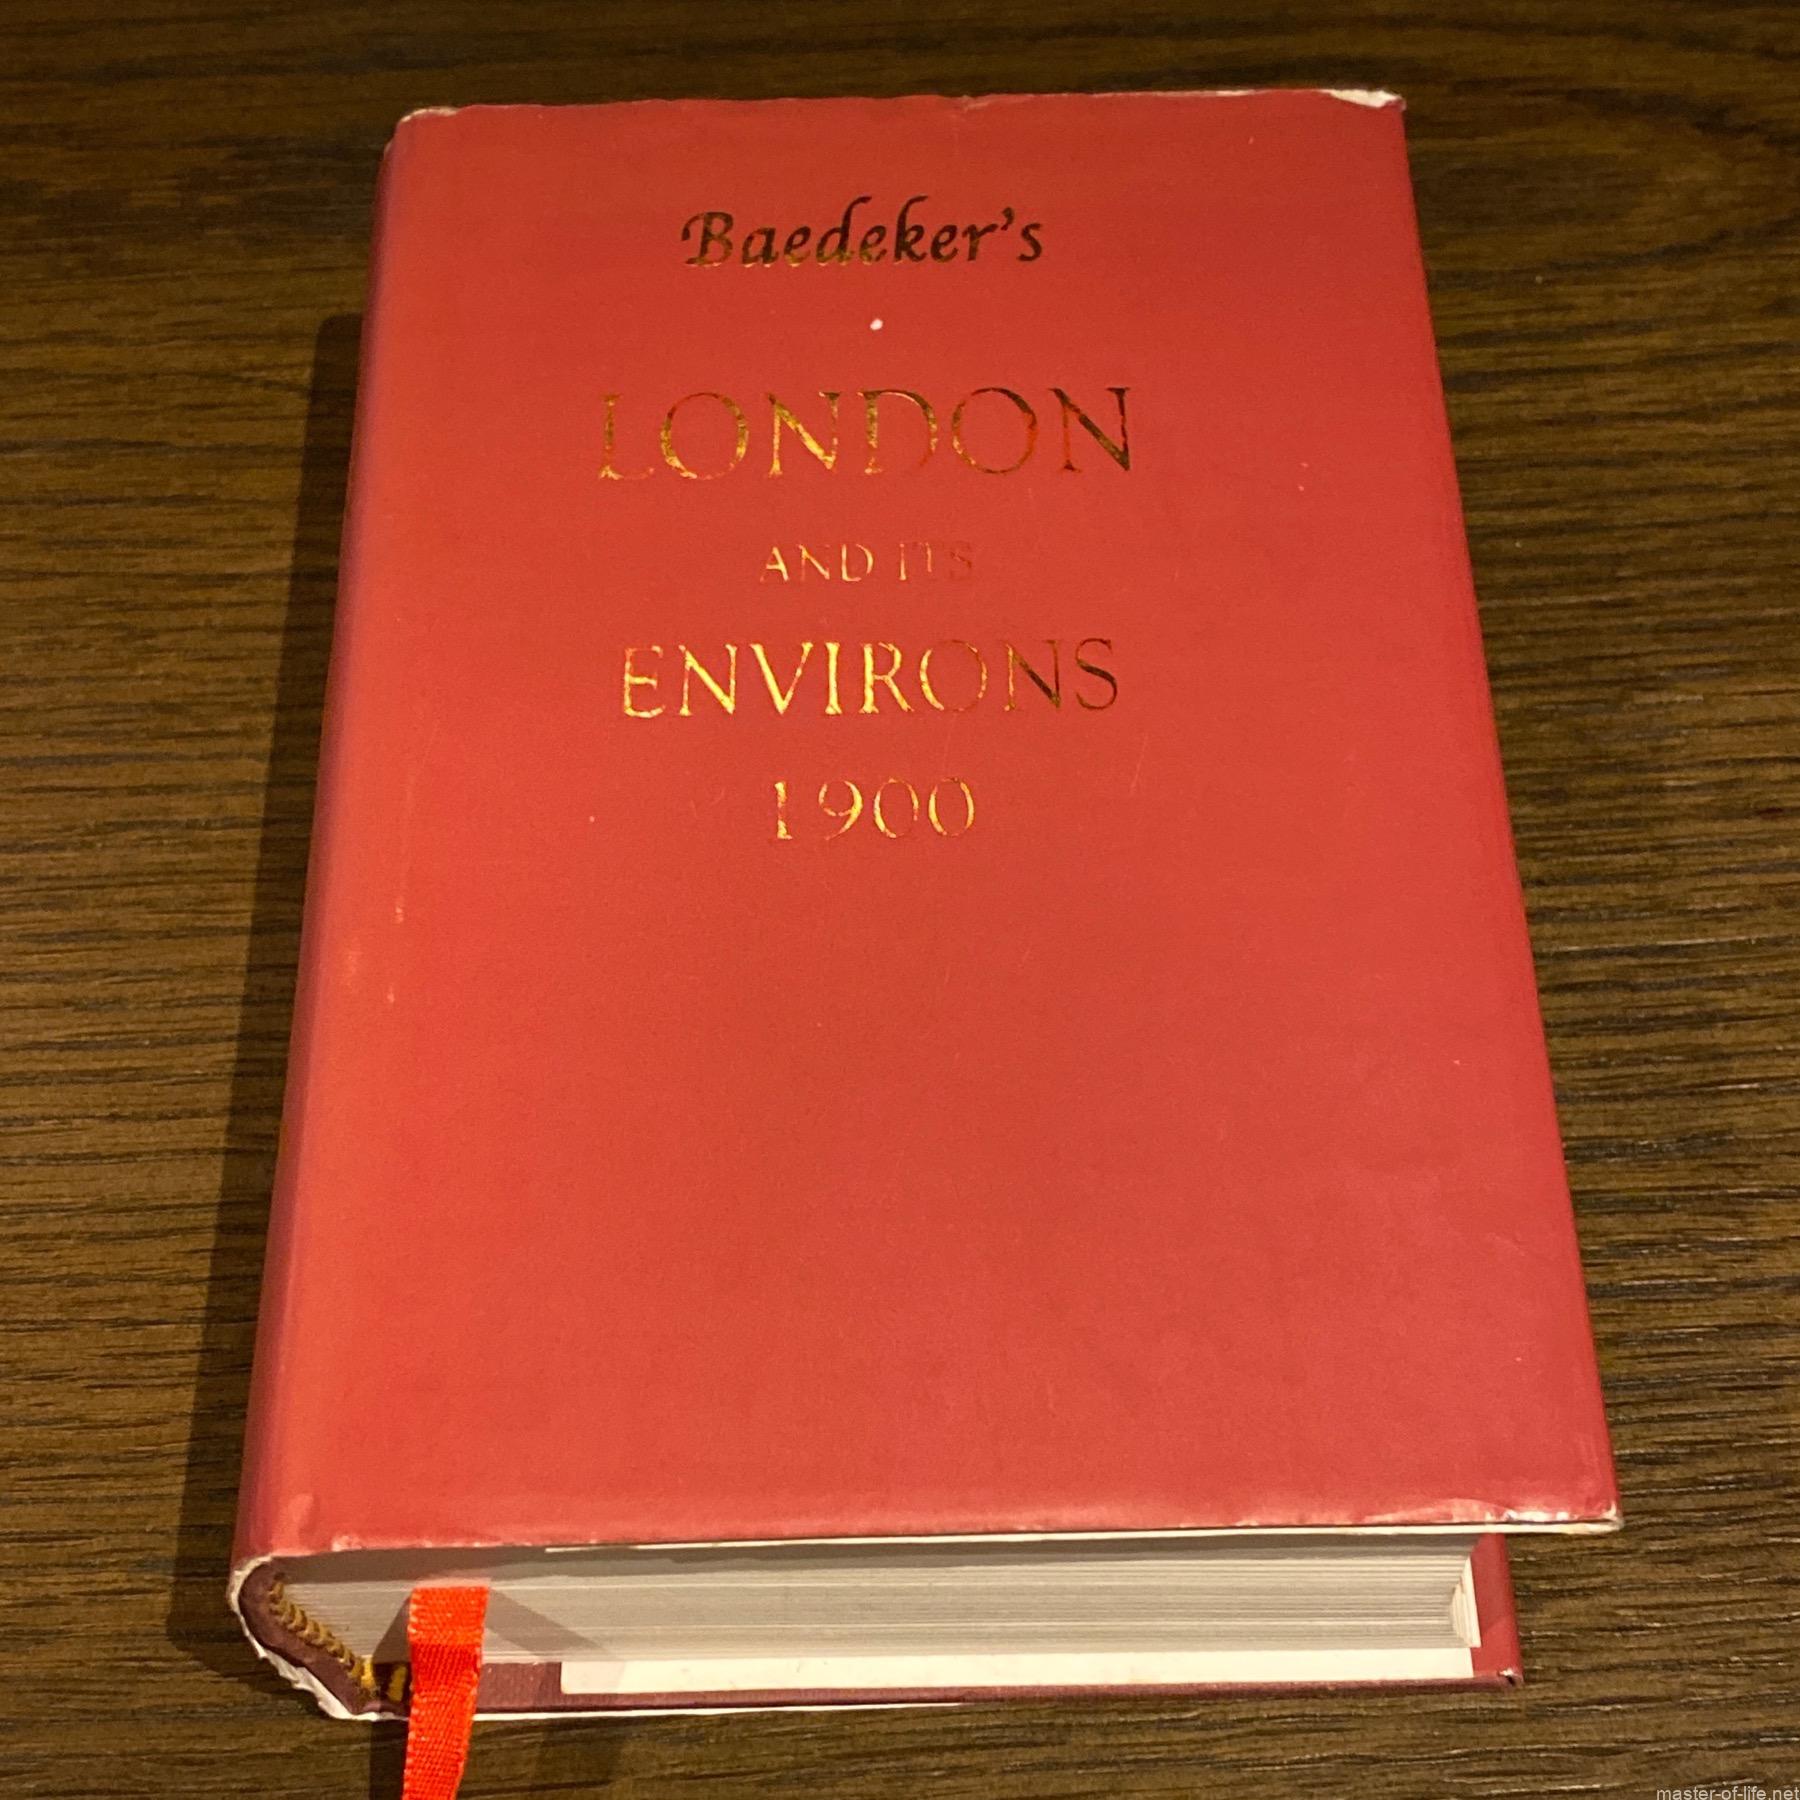 Baedeker's London 1900